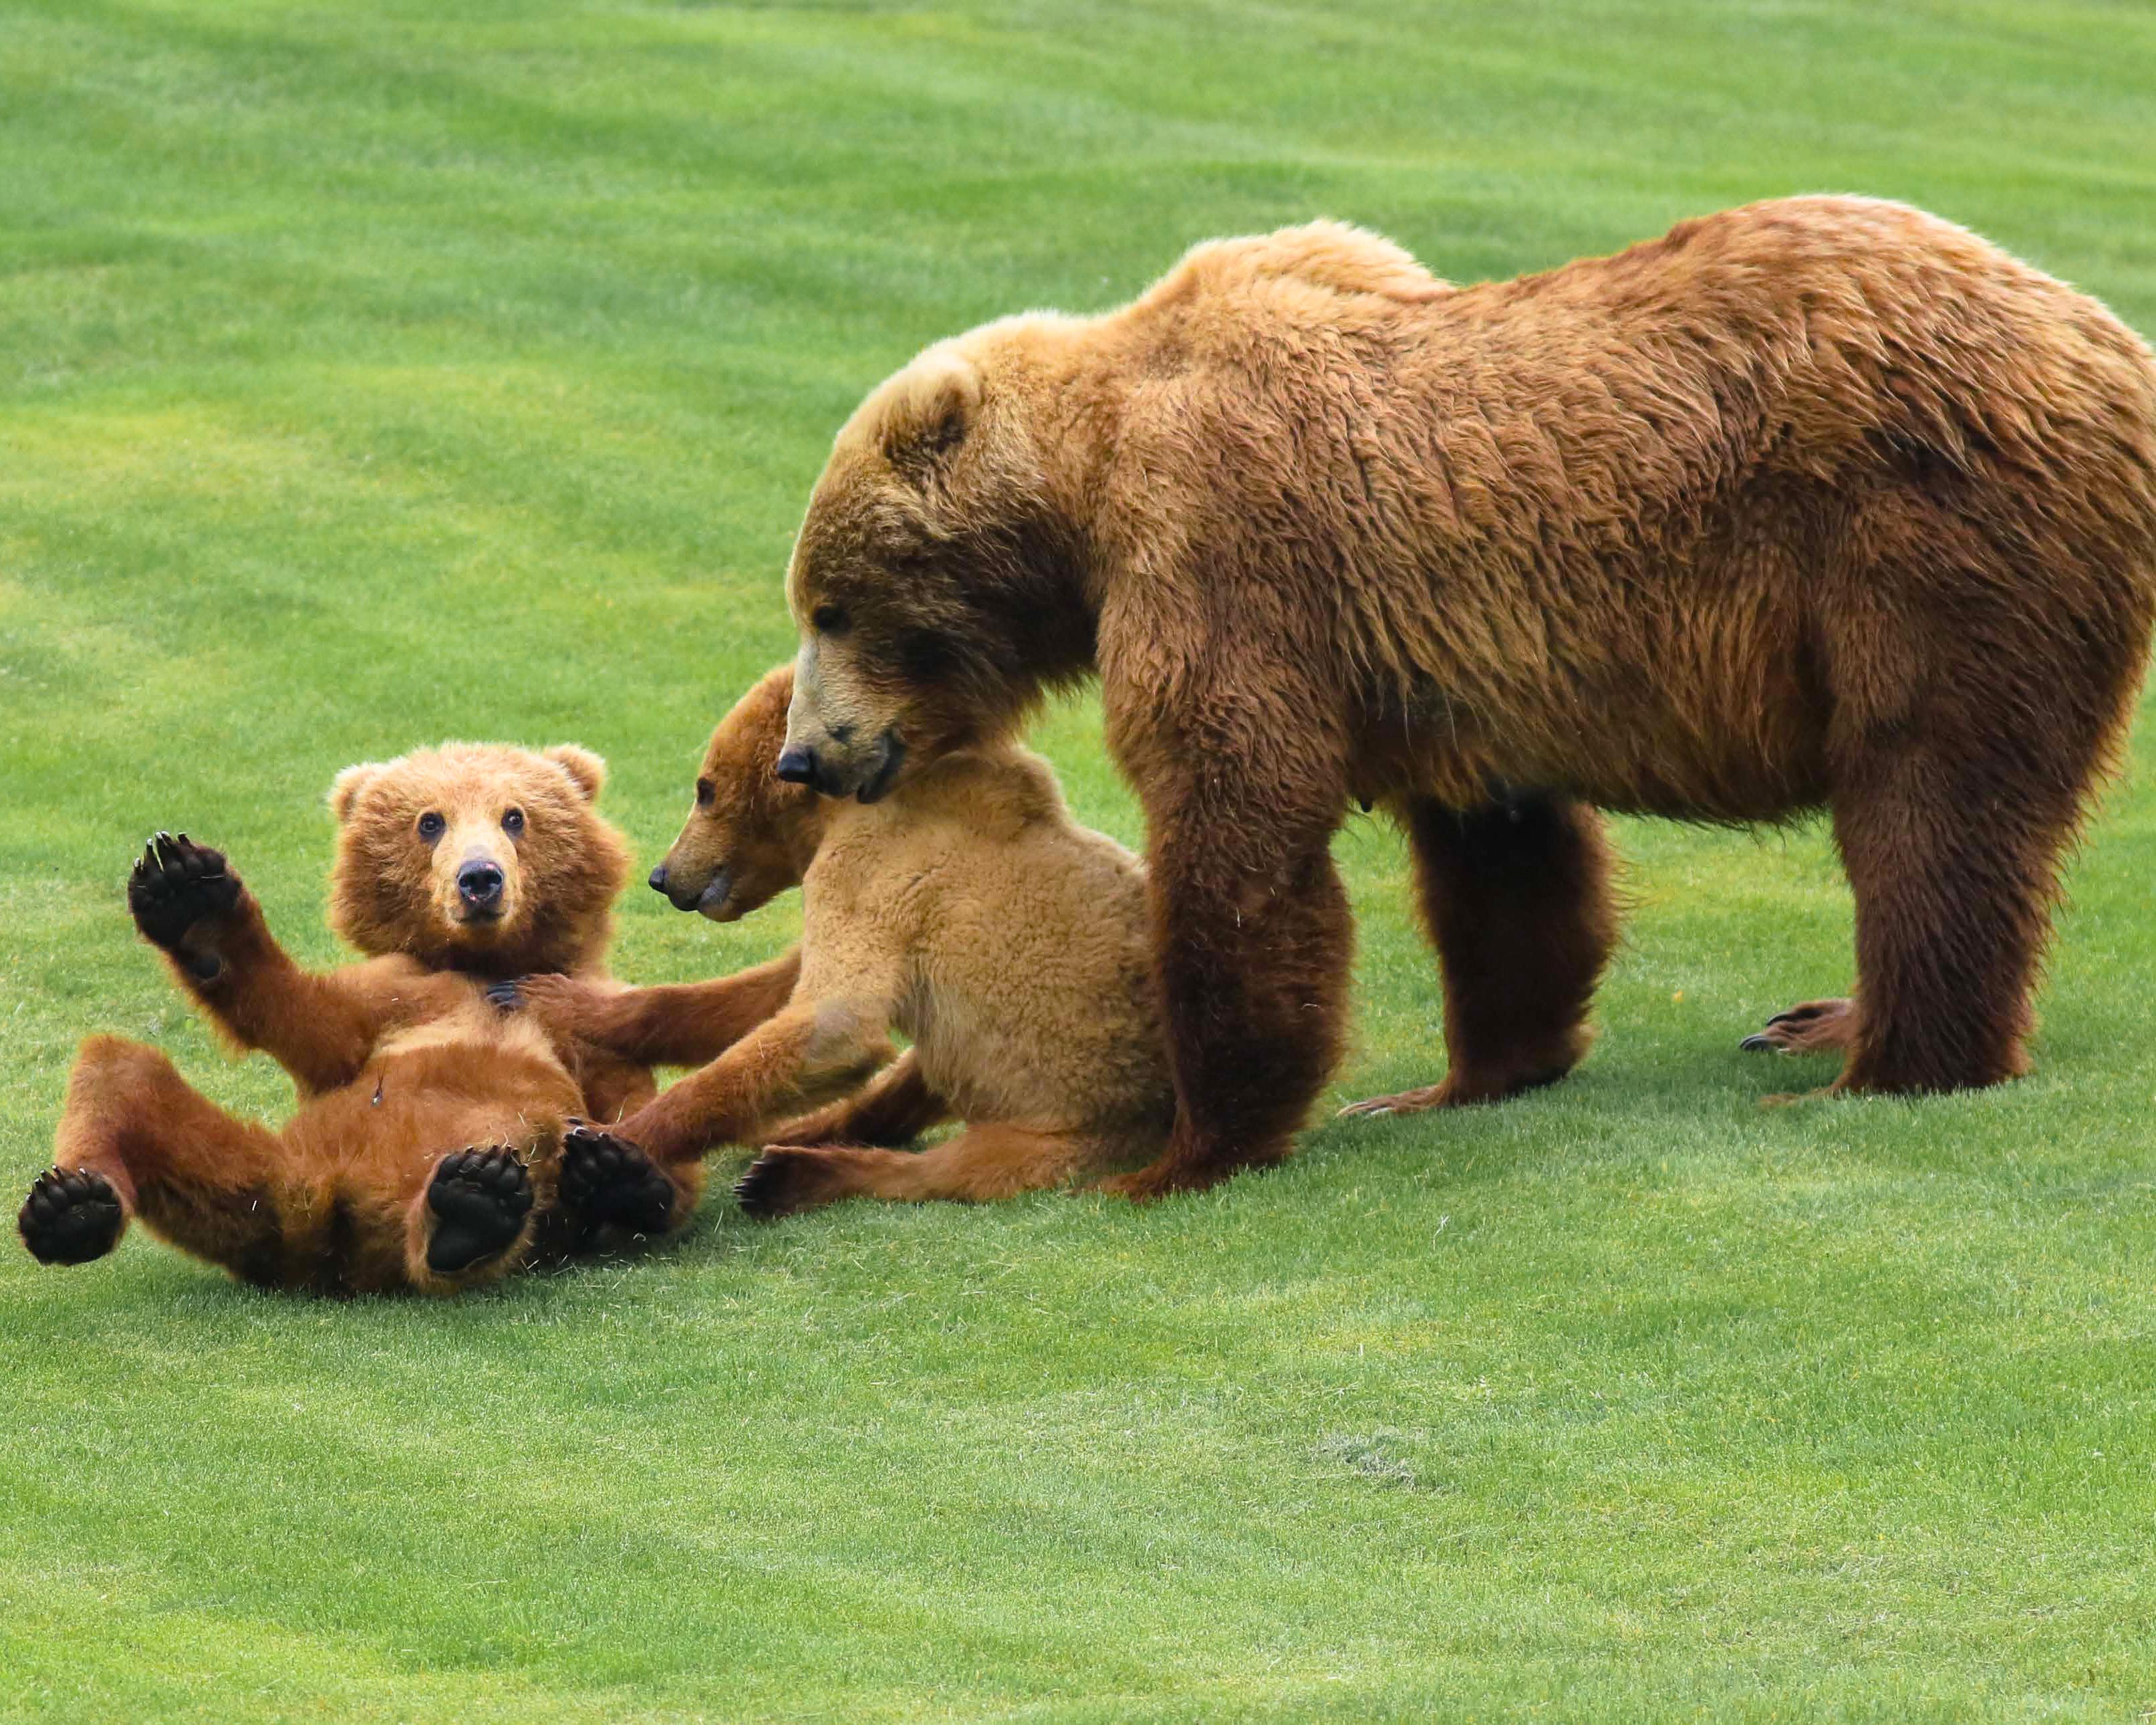 Bear watching on Kodiak Island: a sow Kodiak bear and her two cubs on grass.